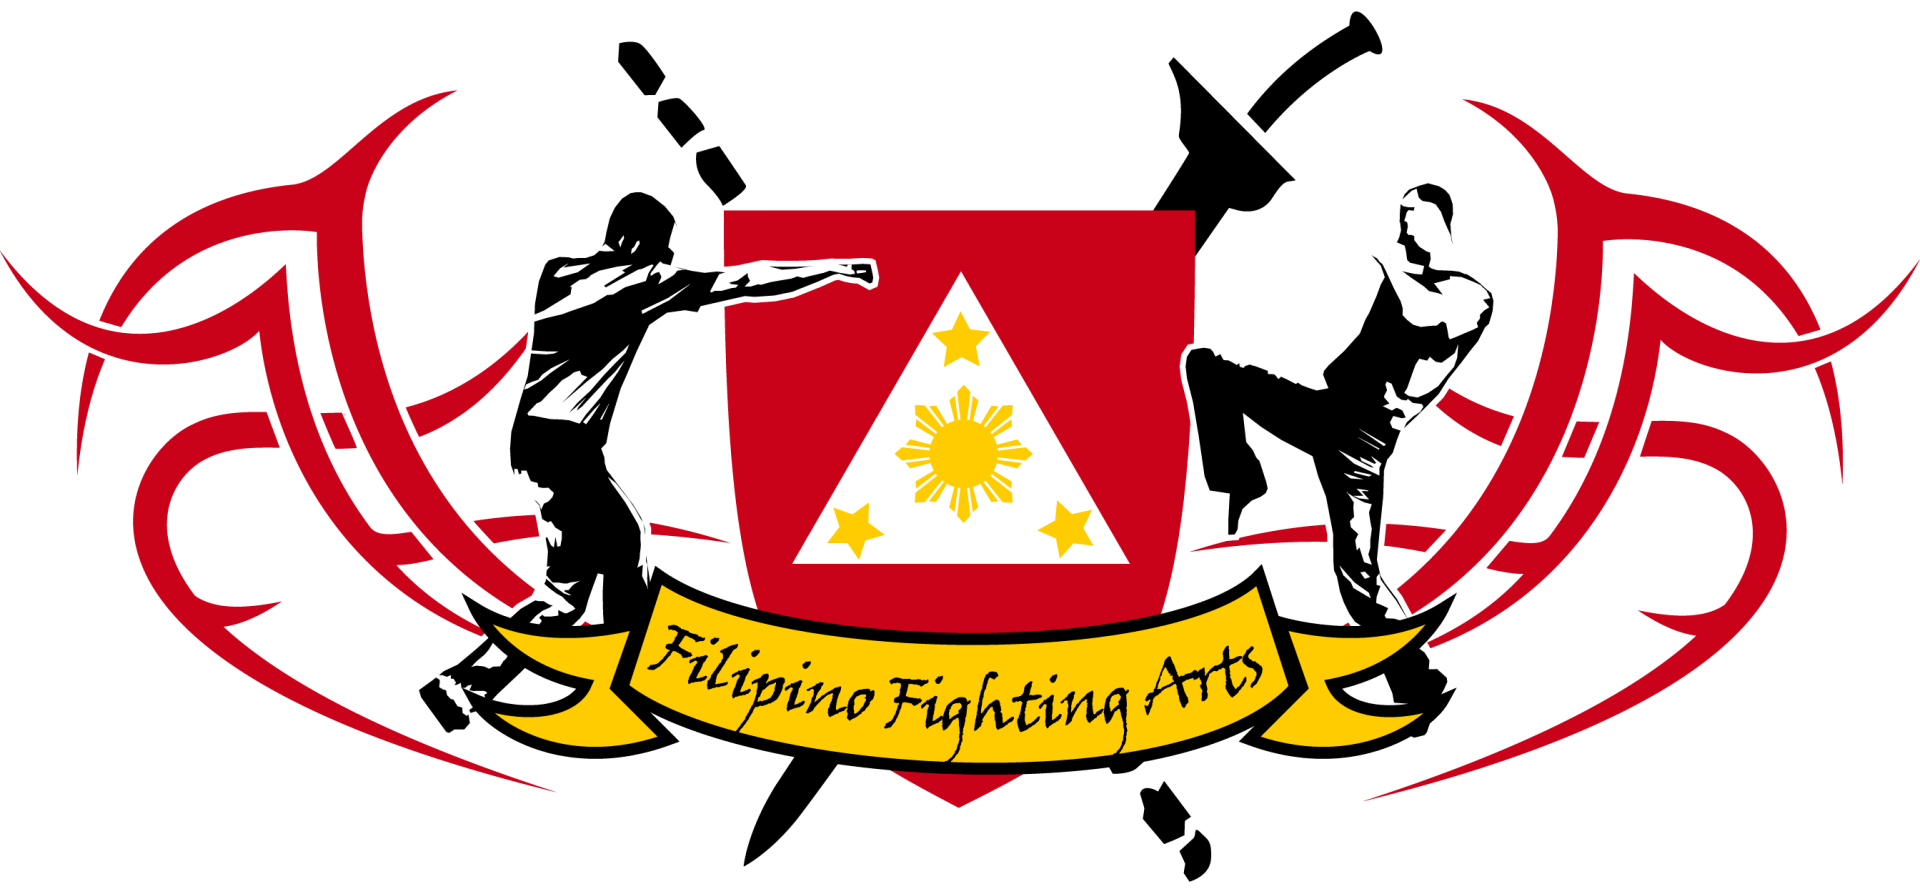 Filipino Fighting Arts